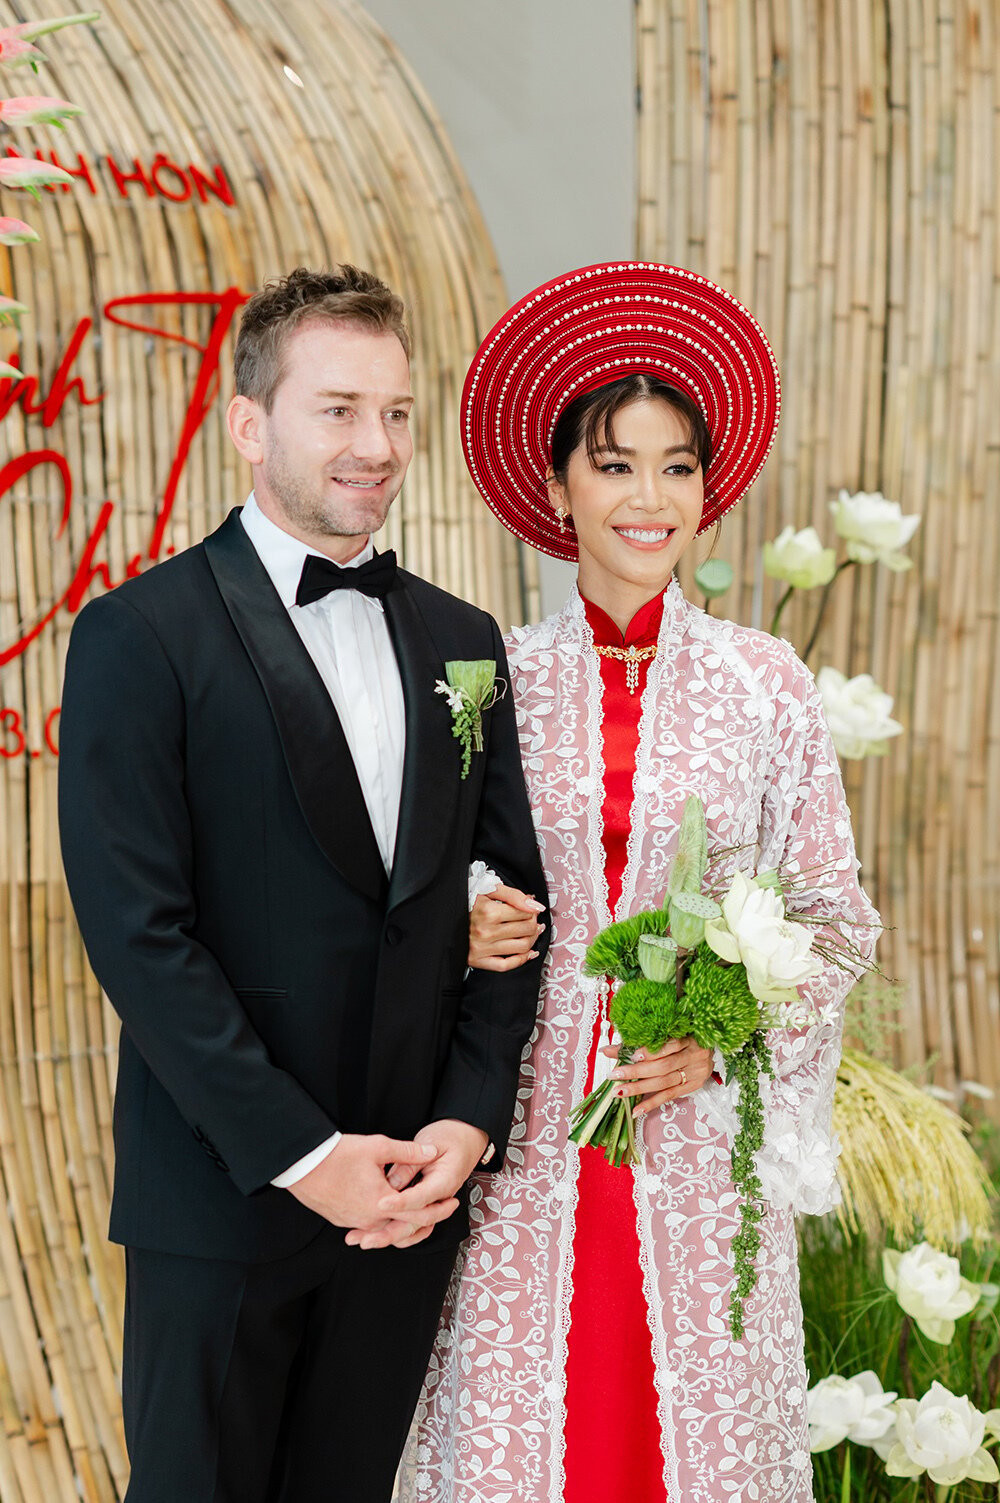 Đám cưới của Minh Tú và chồng Tây tổ chức theo phong cách truyền thống để chú rể người Đức cảm nhận rõ nét văn hóa Việt.